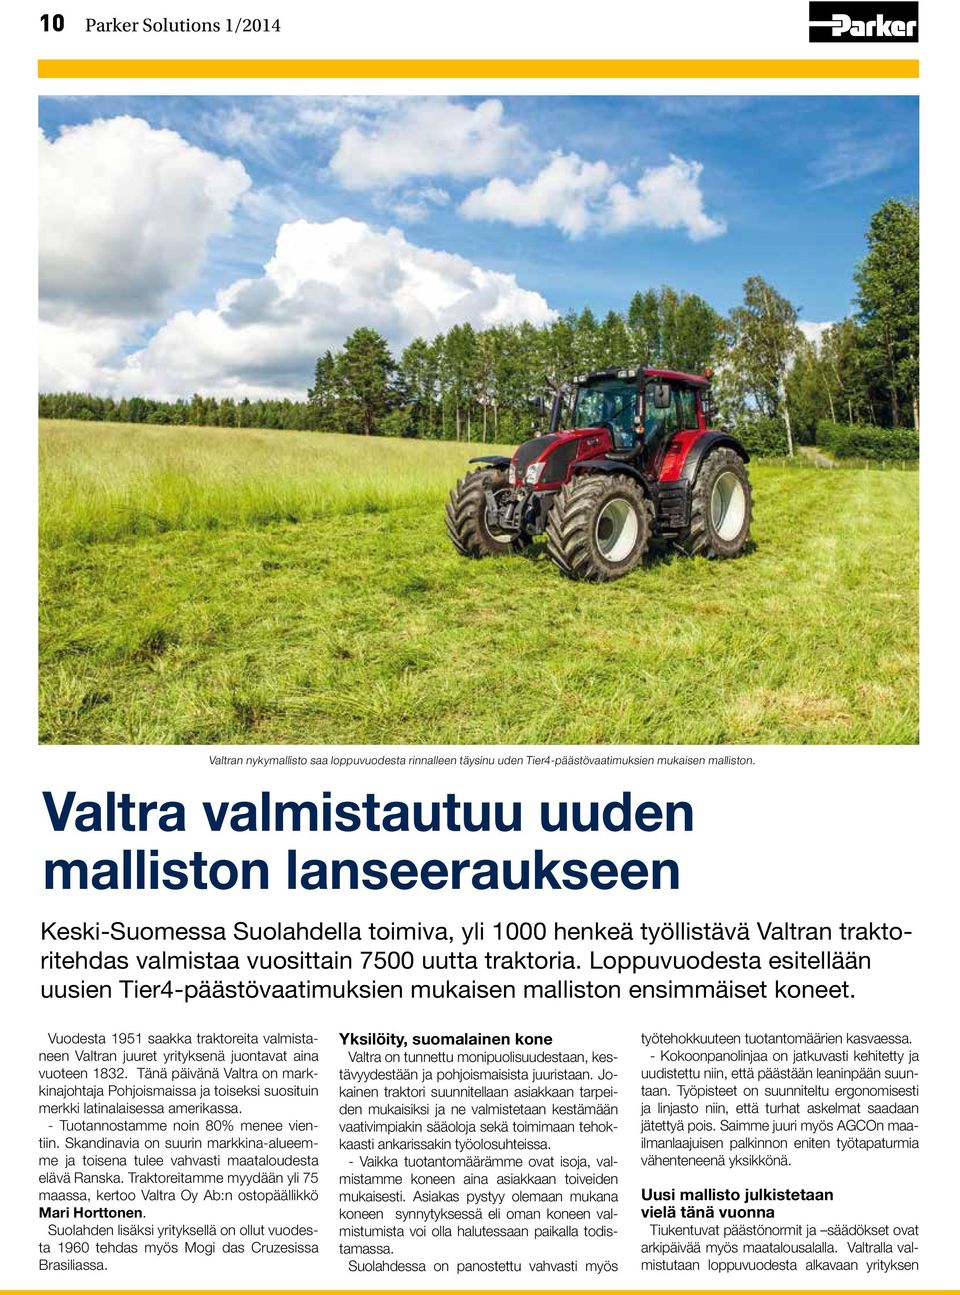 Loppuvuodesta esitellään uusien Tier4-päästövaatimuksien mukaisen malliston ensimmäiset koneet. Vuodesta 1951 saakka traktoreita valmistaneen Valtran juuret yrityksenä juontavat aina vuoteen 1832.